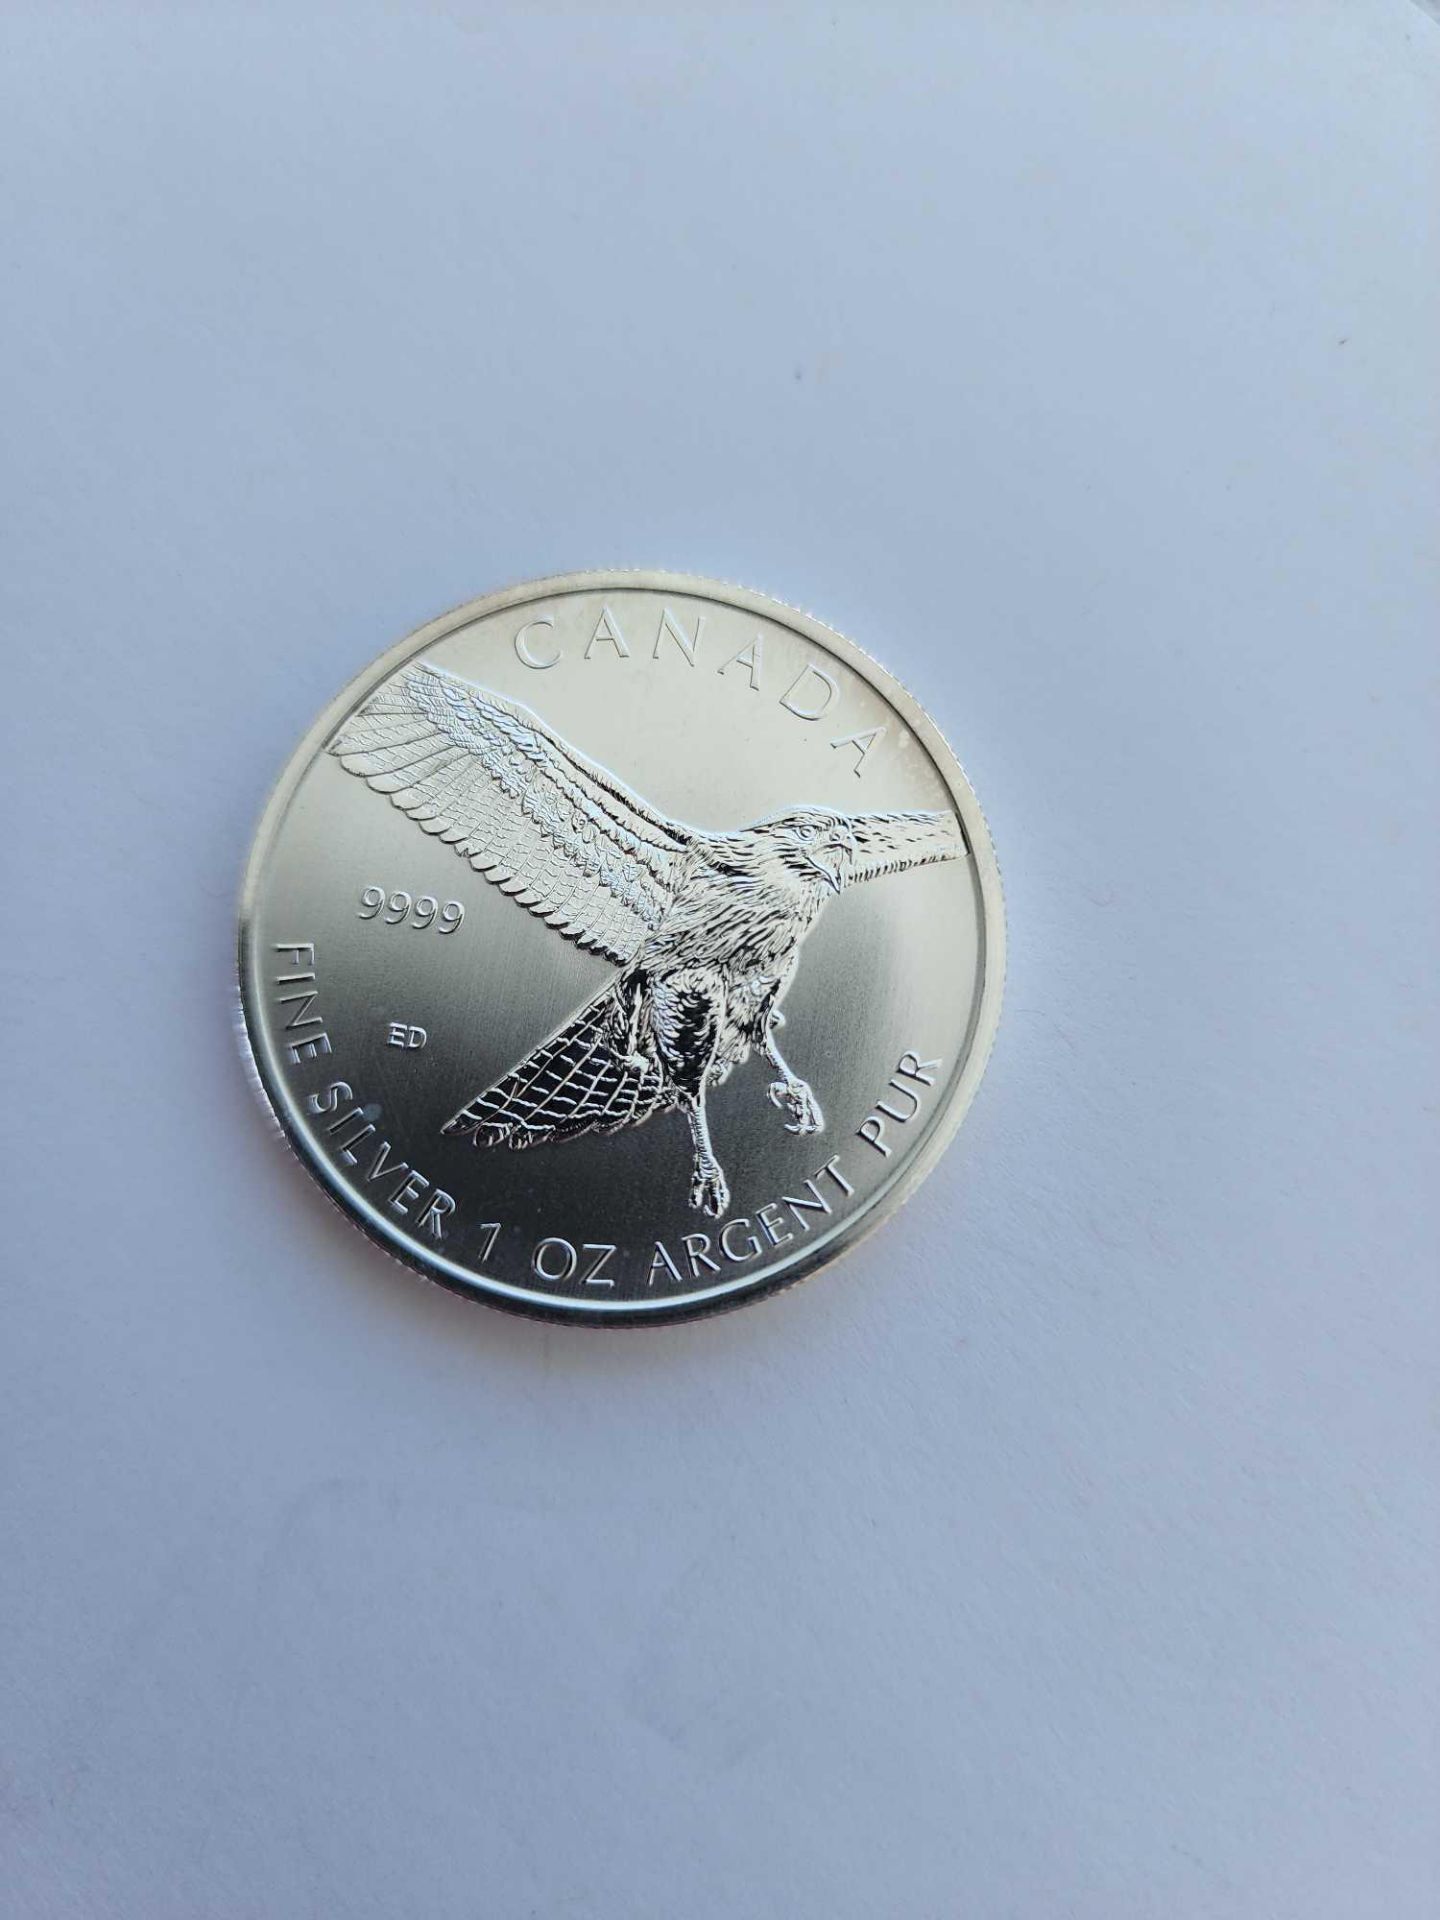 3 1 oz Silver canada birds silver coins - Image 4 of 5